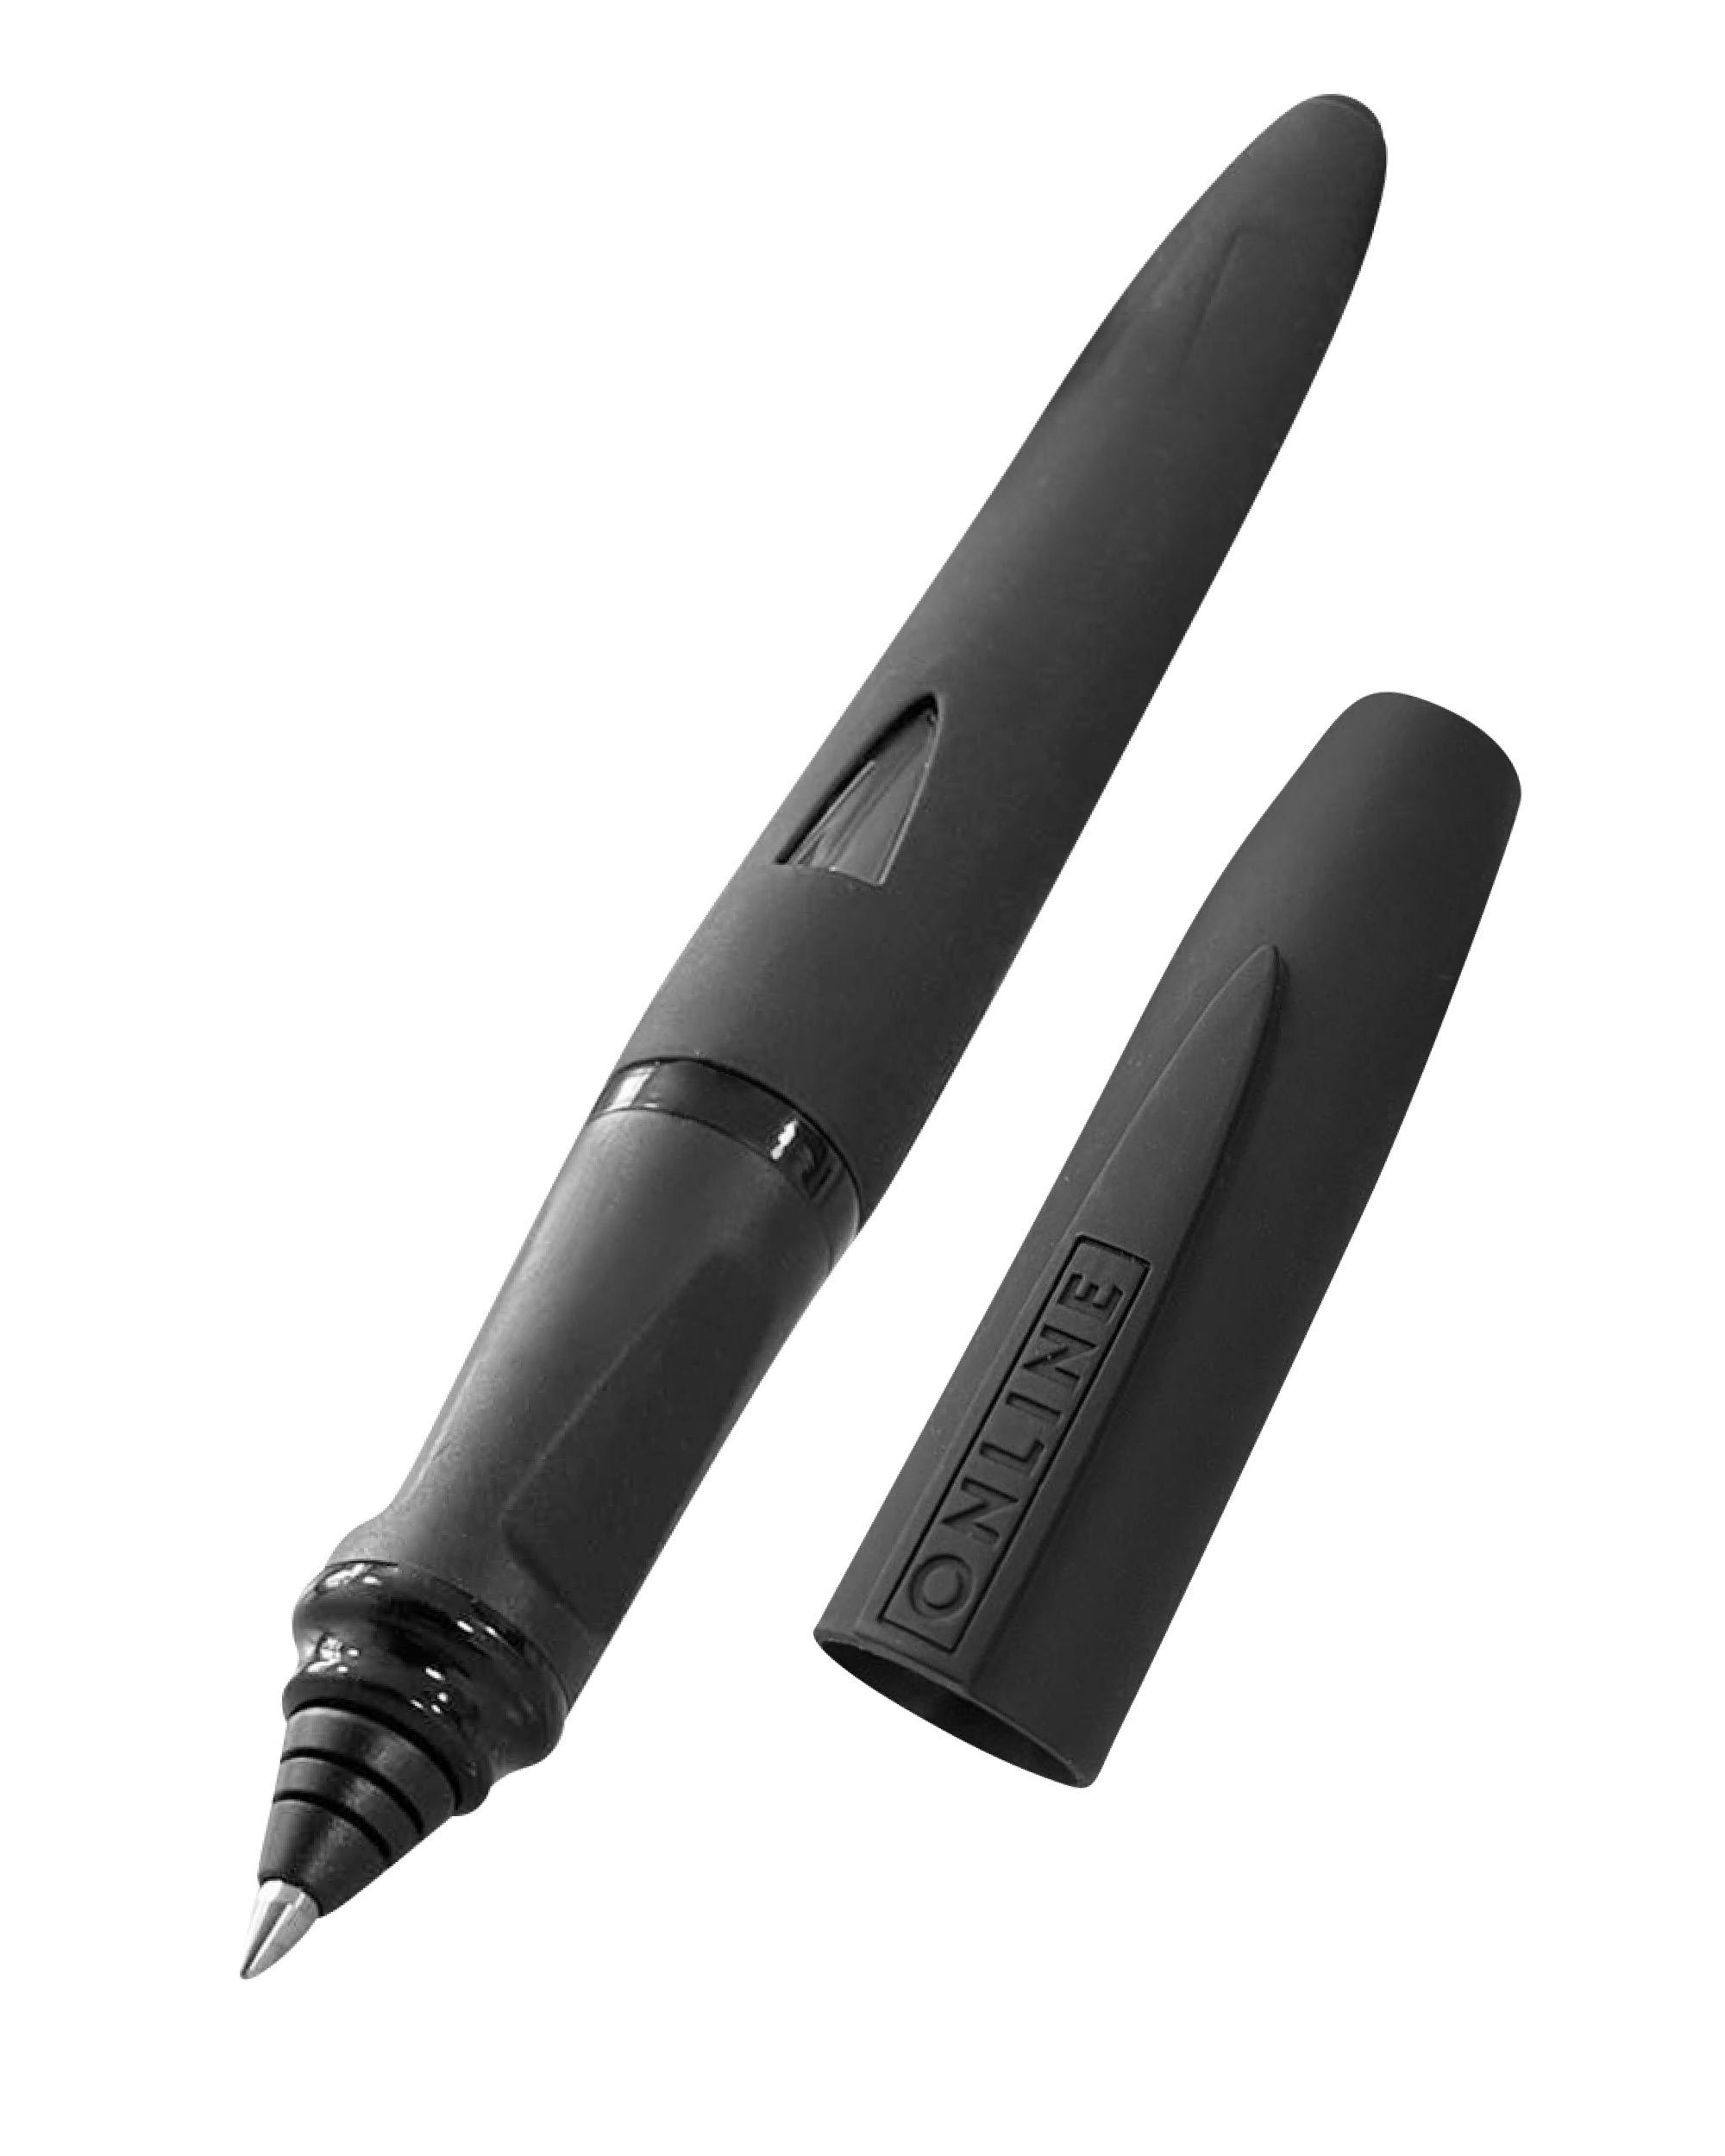 Online Pen Füller Switch Expert, ergonomisch, ideal für die Schule, mit Stylus-Tip